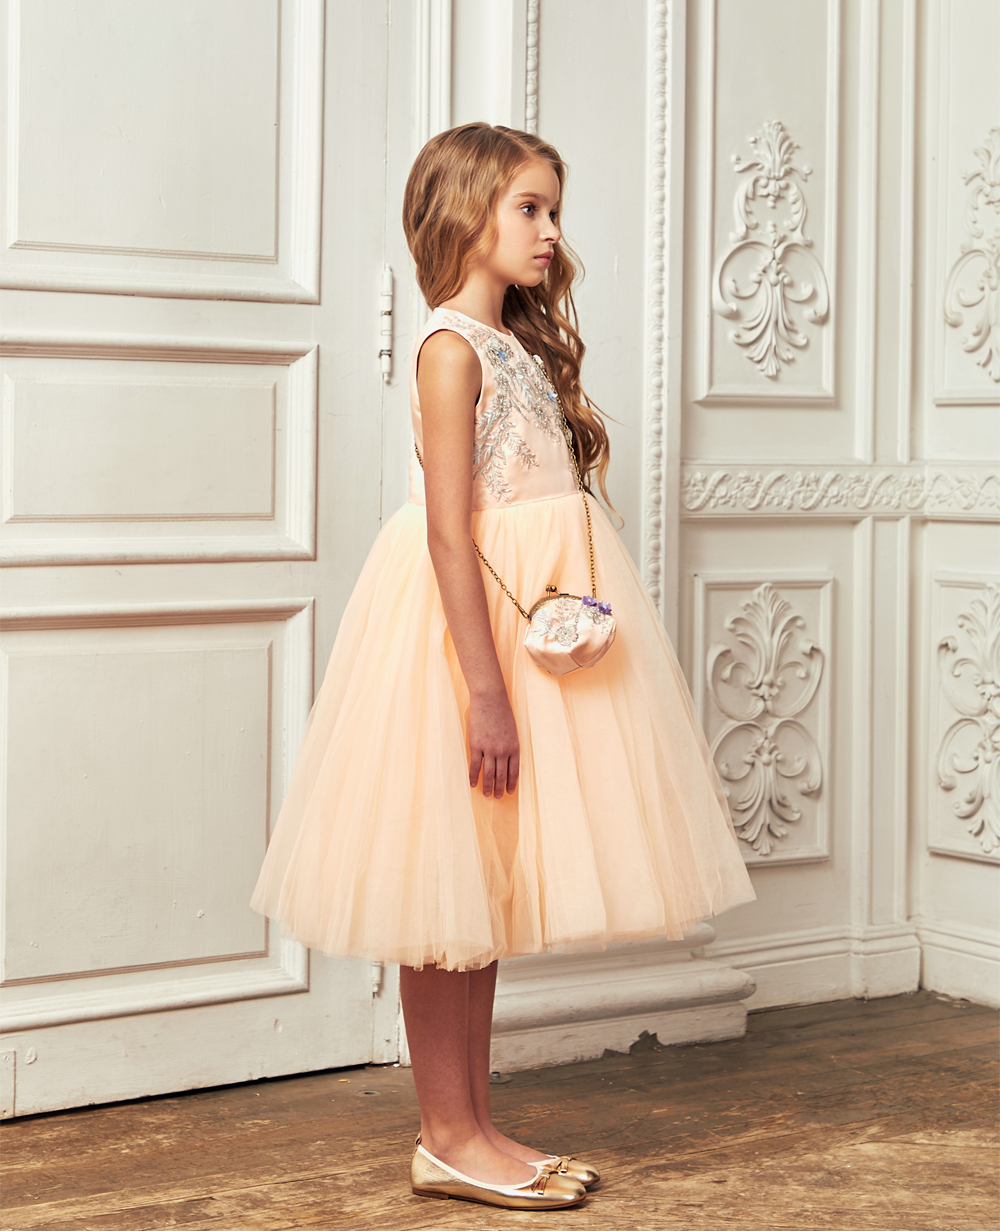 Peach Tuelle Full Length Skirt Dress